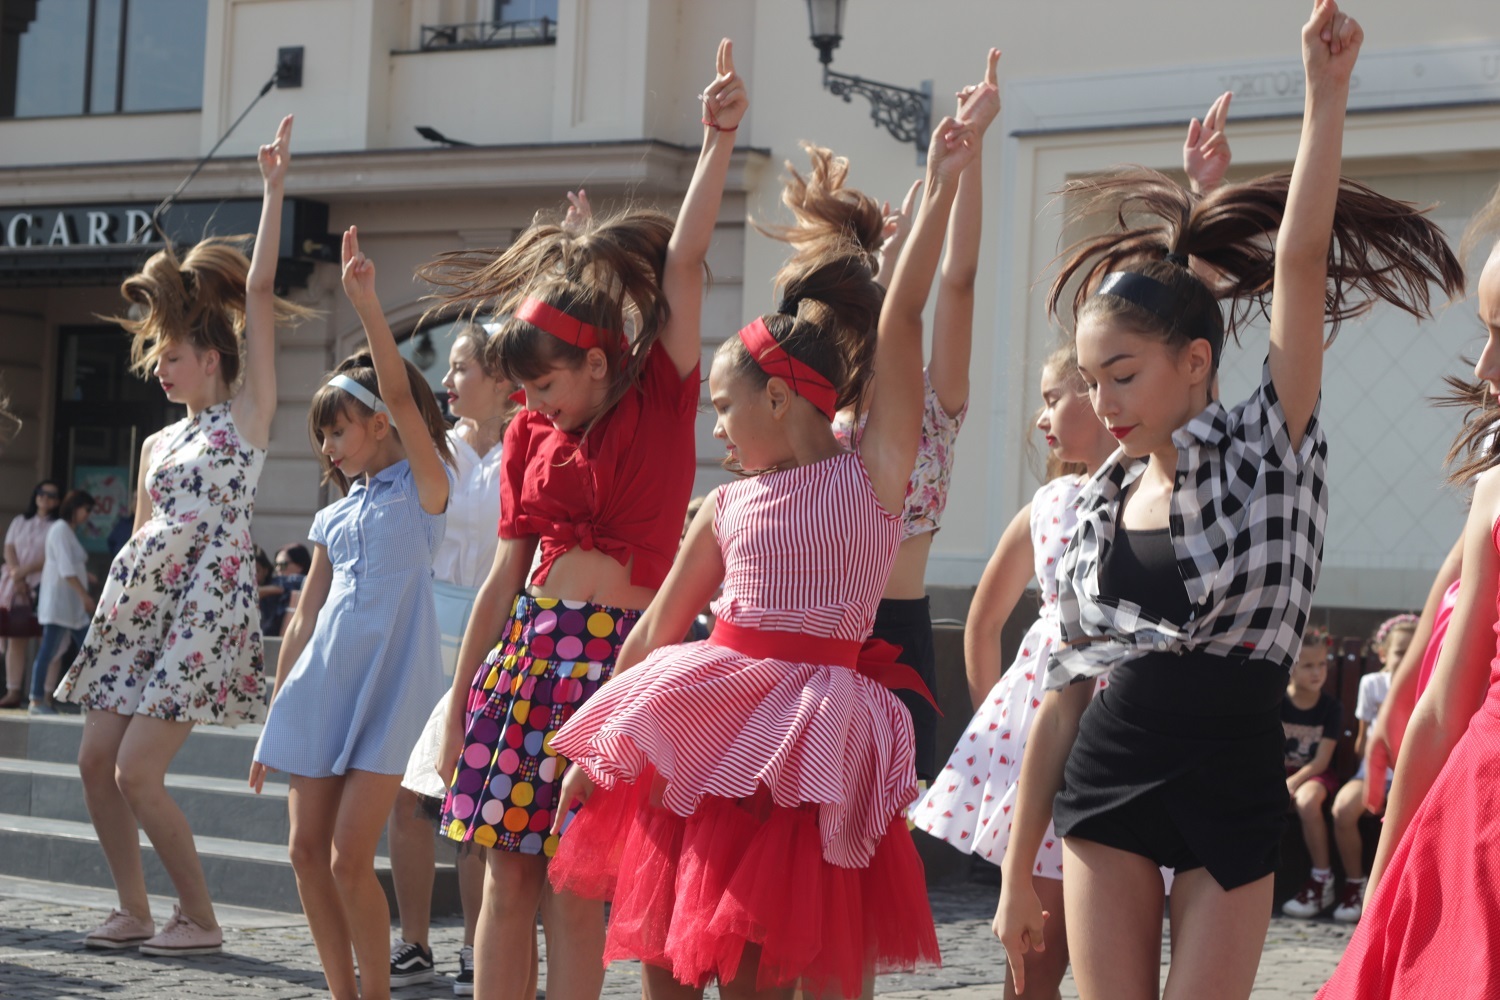 На вітання до Дня Ужгород вихованці студії “Бліц” залучили до танцю своїх батьків